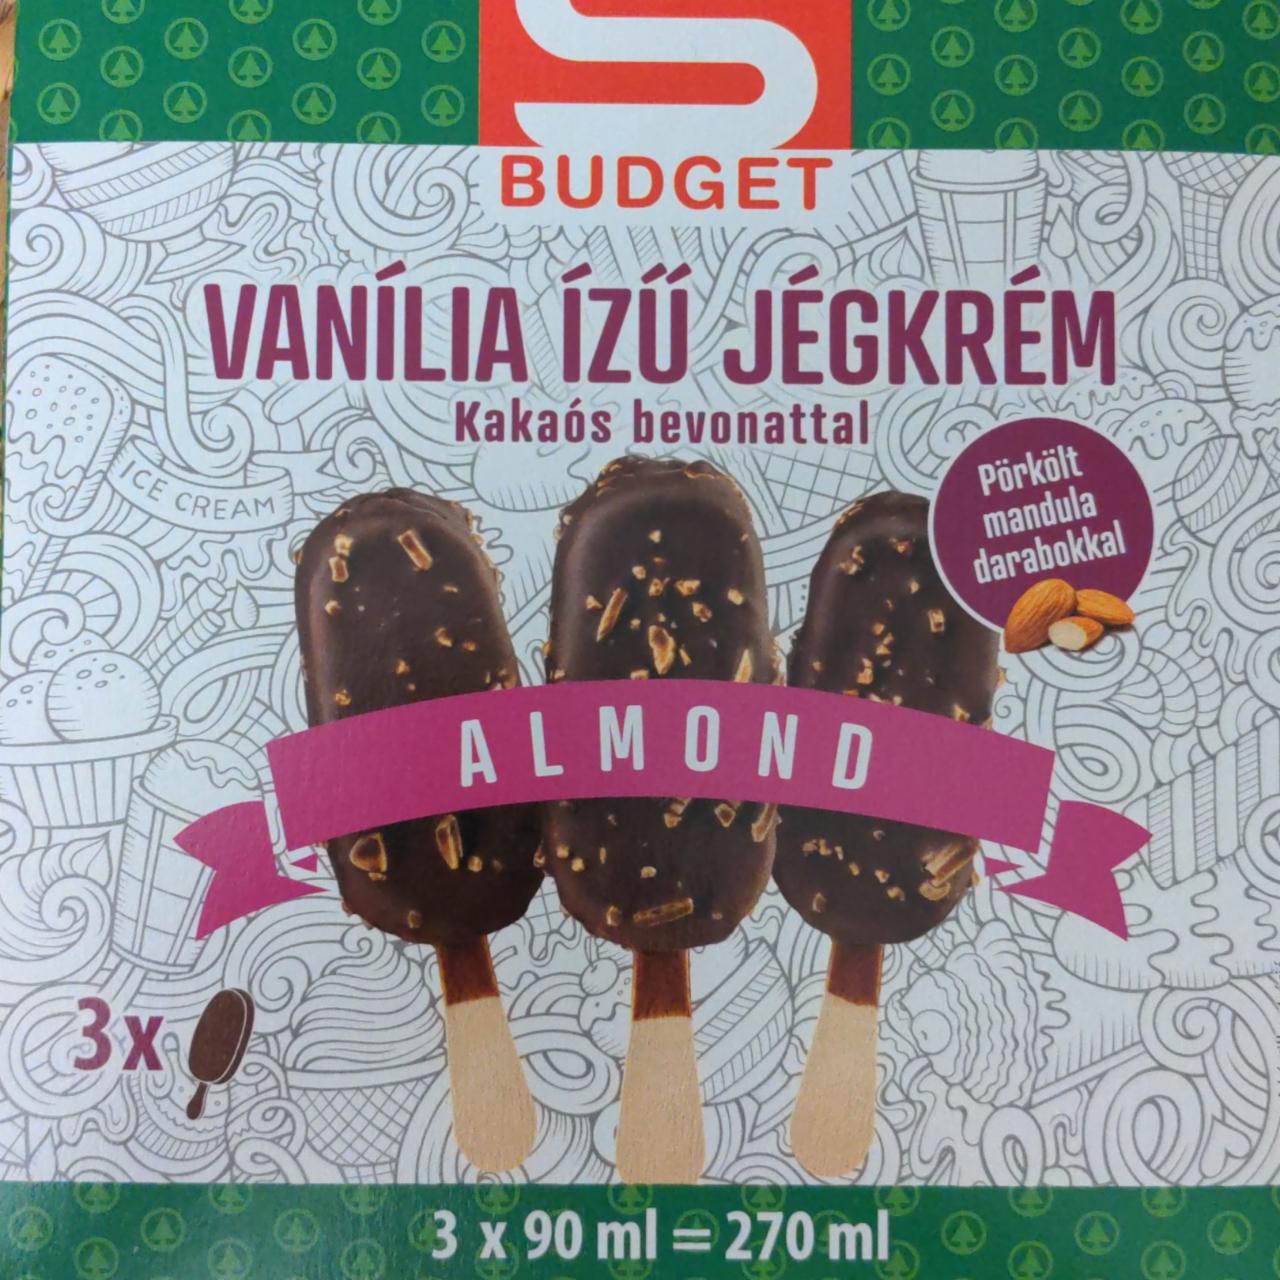 Képek - Vanília ízű jégkrém kakaós bevonattal Almond S Budget